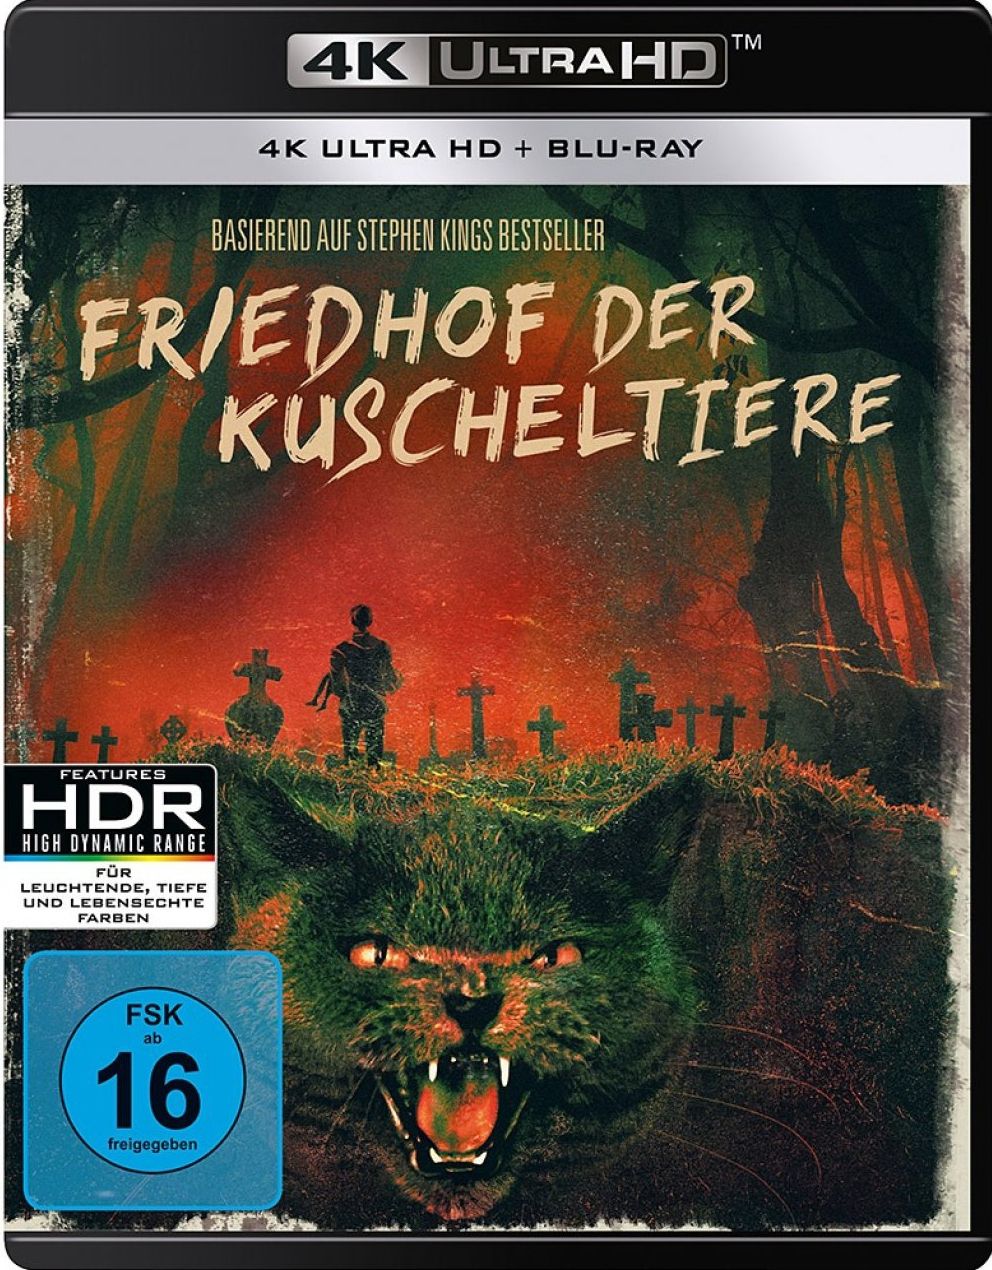 Friedhof der Kuscheltiere (2 Discs) (UHD BLURAY + BLURAY)